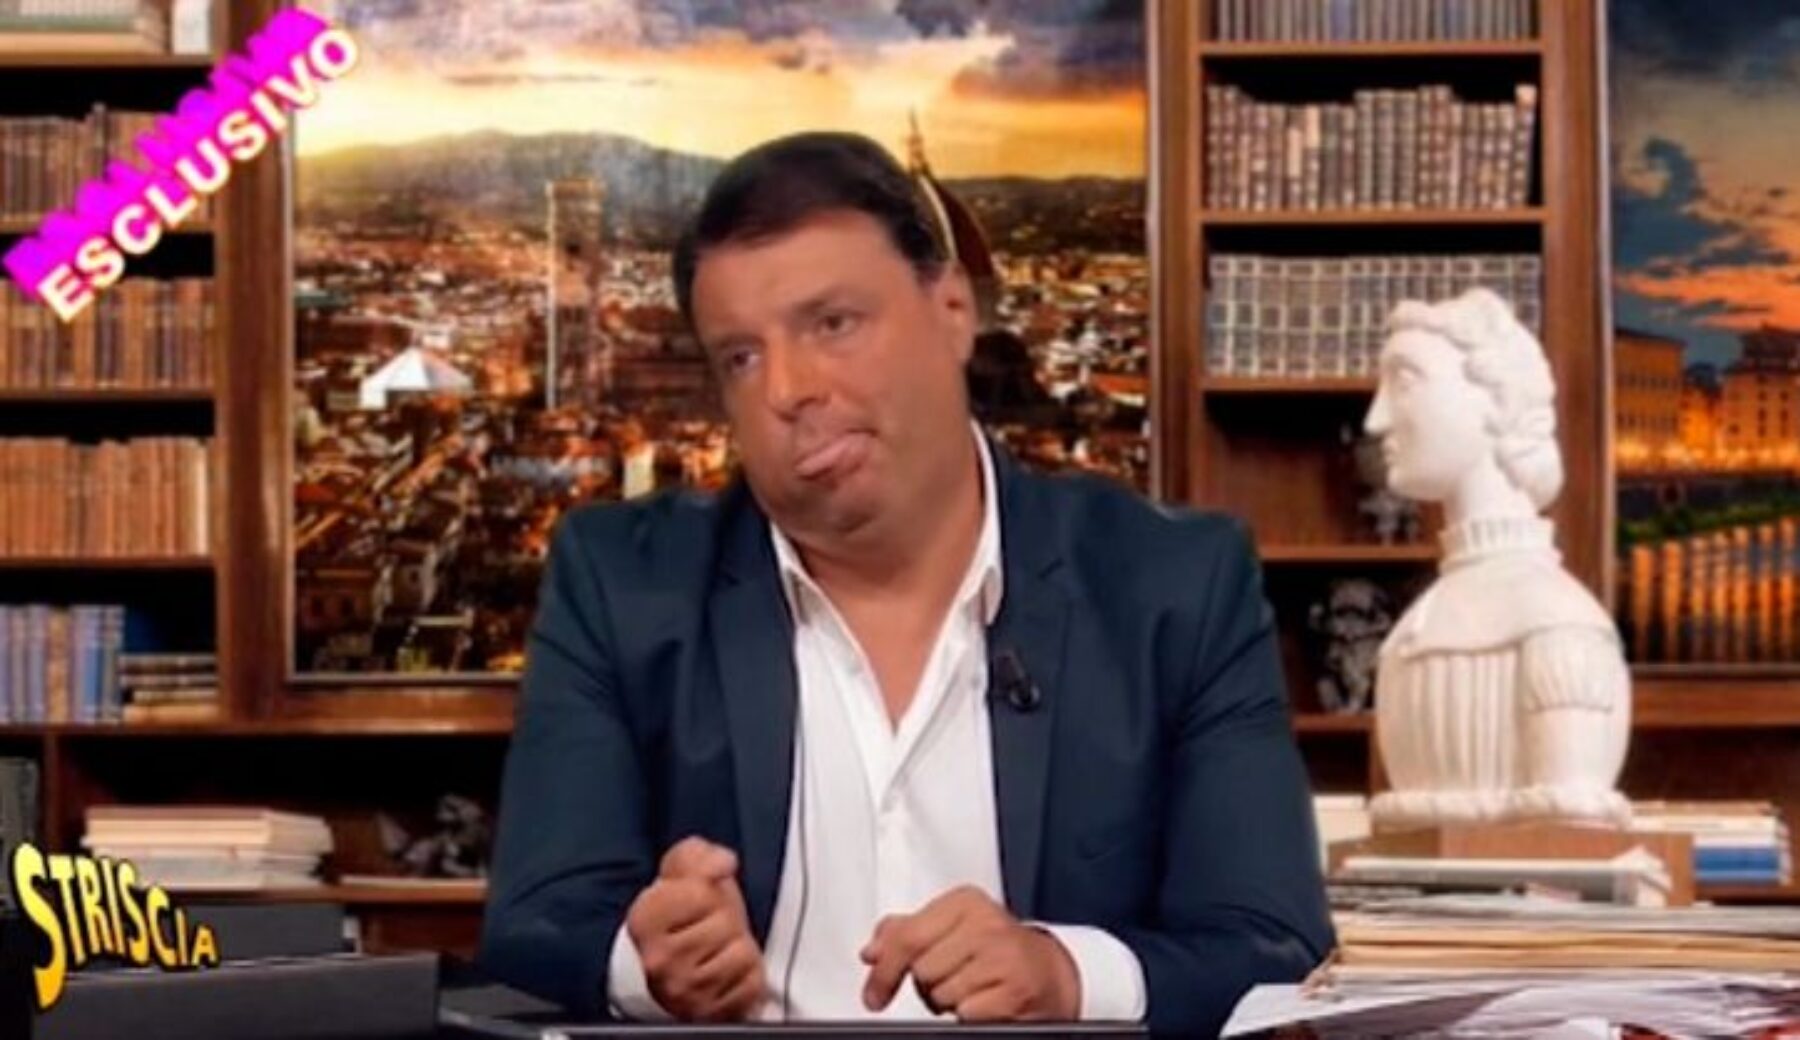 Matteo Renzi si complimenta con Striscia e rassicura: “Non sono io nel fuorionda”